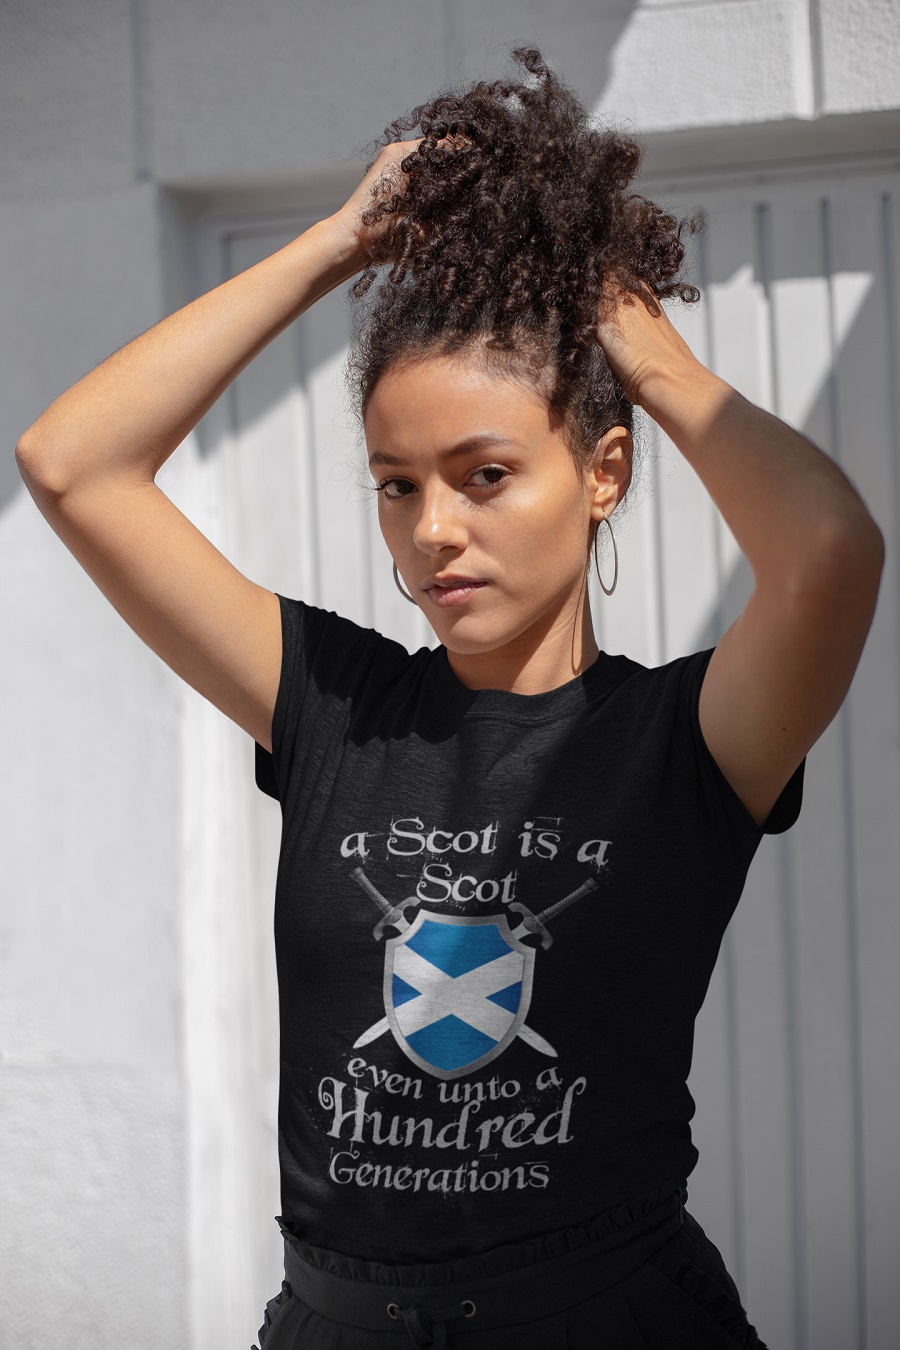 A scot is a scot even unto a hundred generations t-shirt